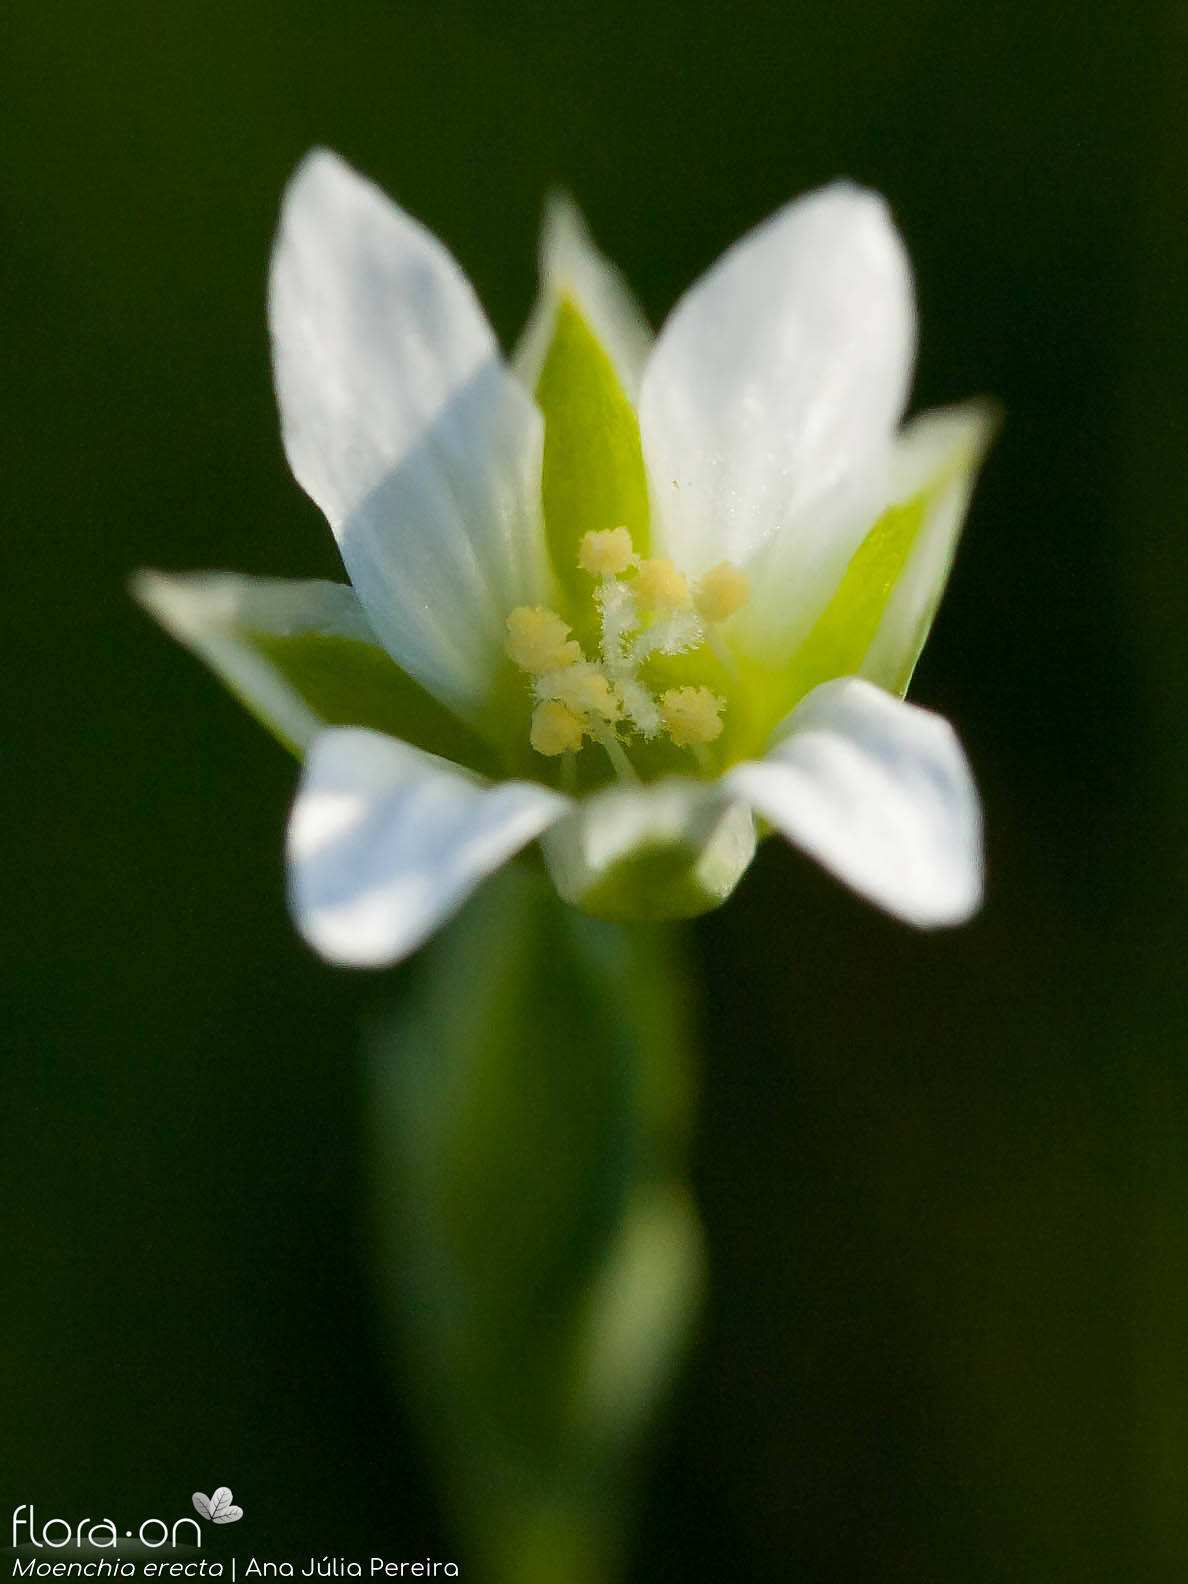 Moenchia erecta - Flor (close-up) | Ana Júlia Pereira; CC BY-NC 4.0